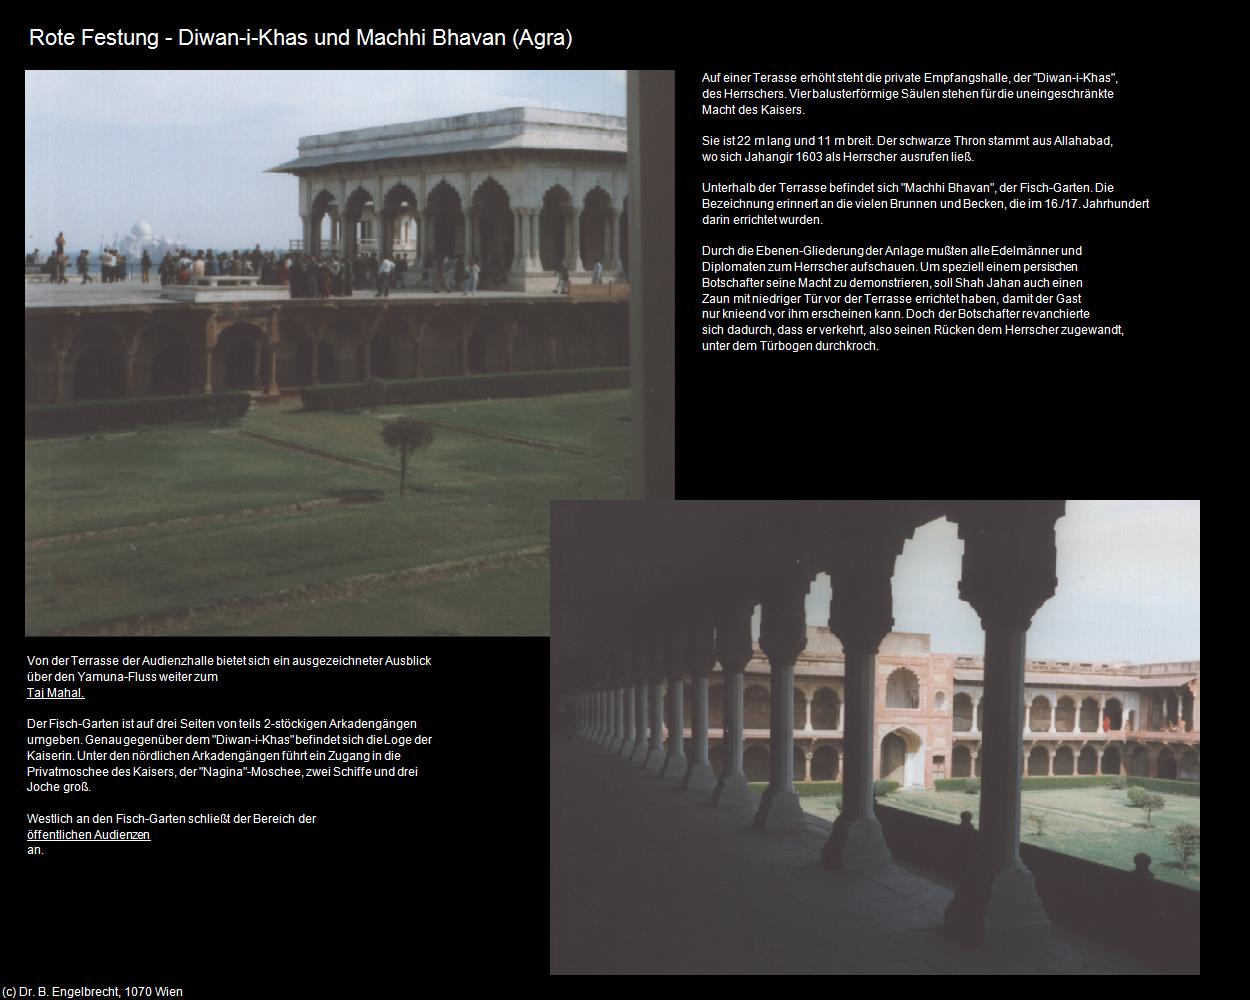 Rote Festung - Diwan-i-Khas und Machhi Bhavan (Agra) in Rajasthan - das Land der Könige(c)B.Engelbrecht